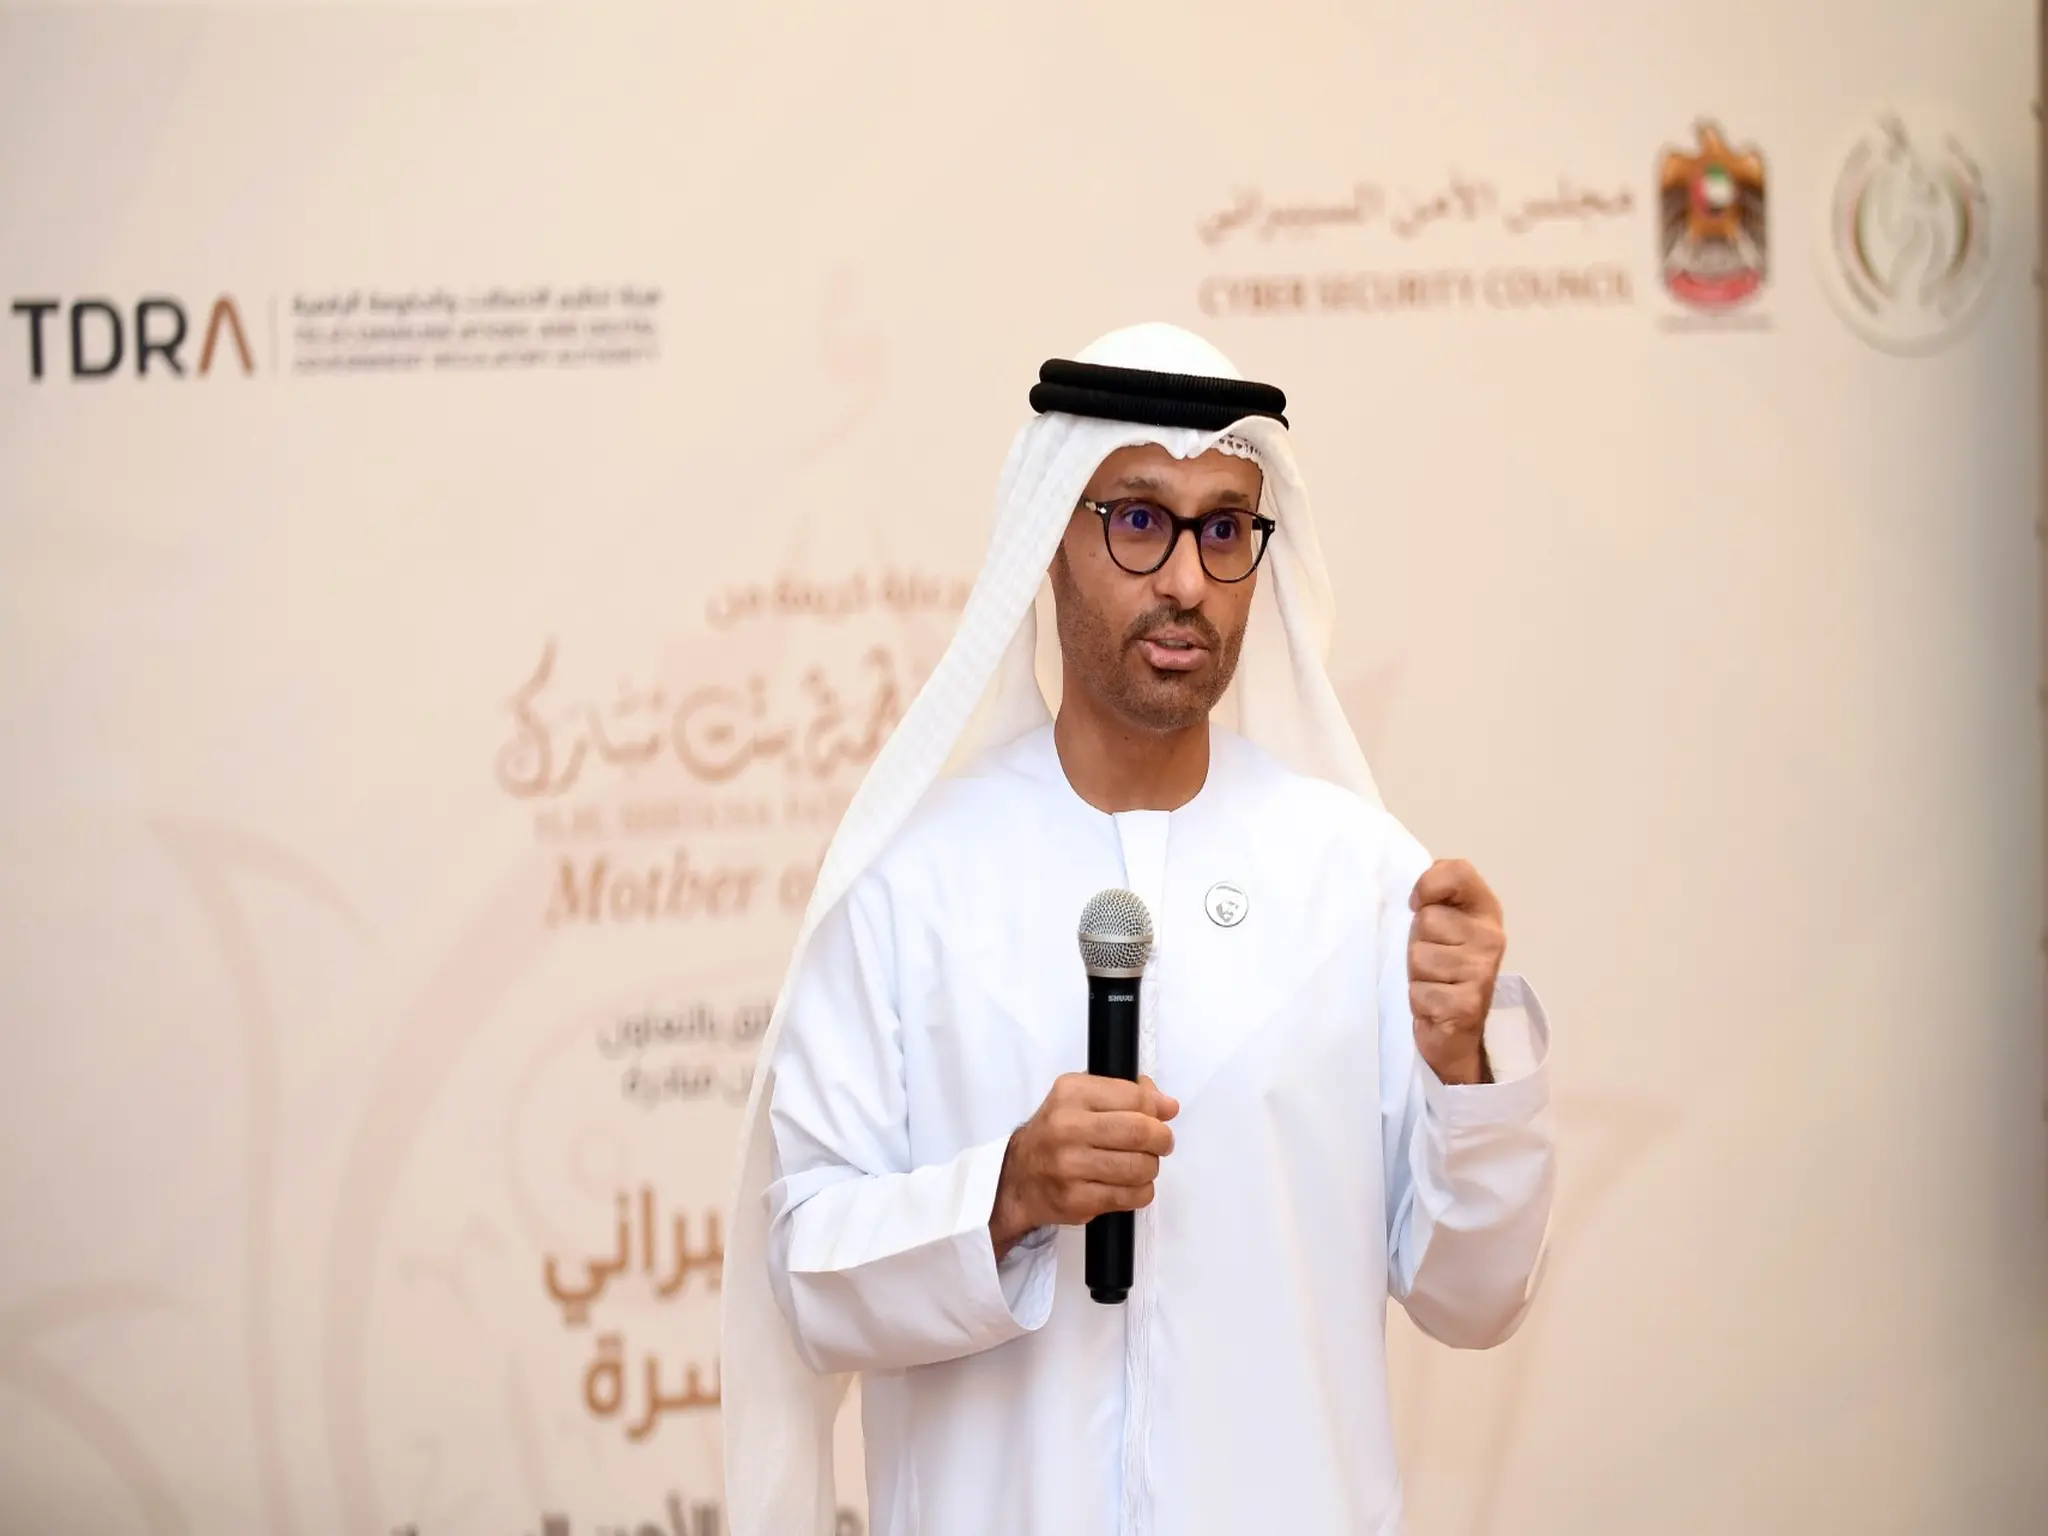 مجلس الأمن السيبراني في الإمارات يصدر تنبيه هام للجمهور بسبب بعض المخاطر الإلكترونية